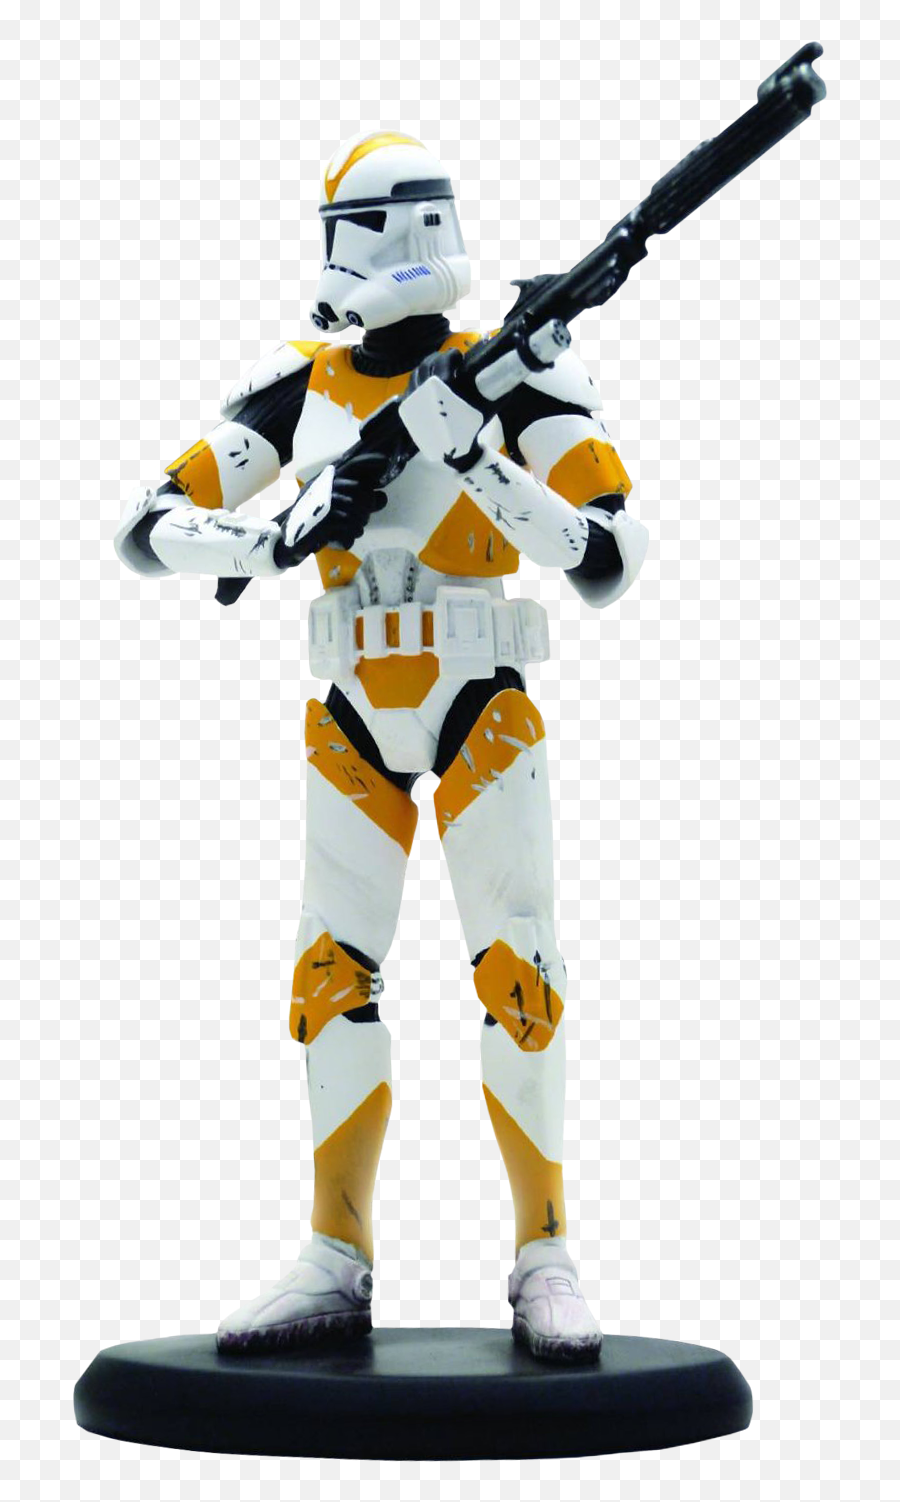 Star - Star Wars Clone Trooper Statue Full Size Png 212th Clone Trooper Toy,Clone Trooper Png